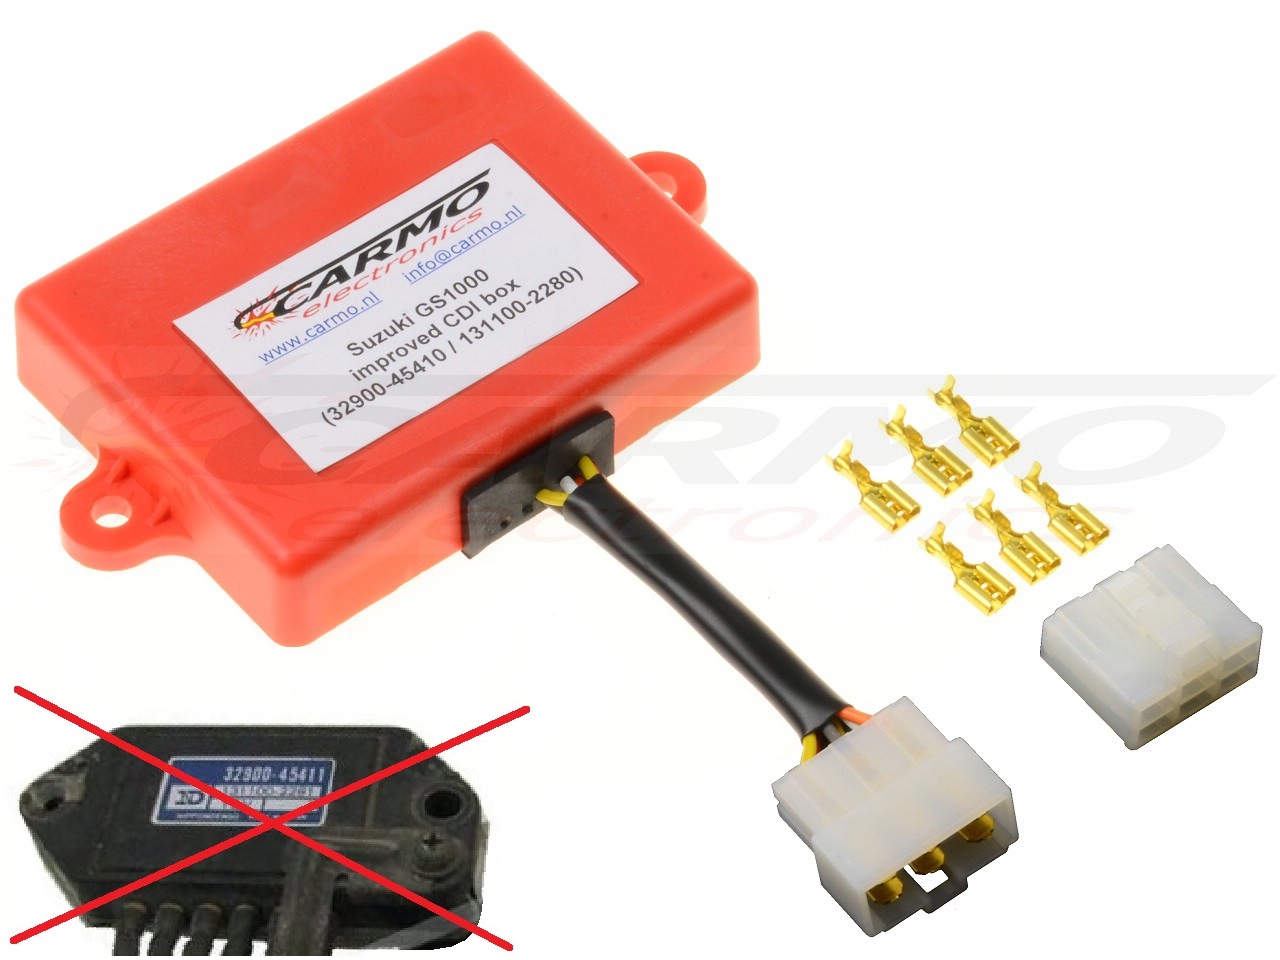 Suzuki GS750 GS850 GS1000 GS1100 TCI CDI dispositif de commande boîte noire (32900-45410 / 45411, 32900-45110 / 45120) - Cliquez sur l'image pour la fermer